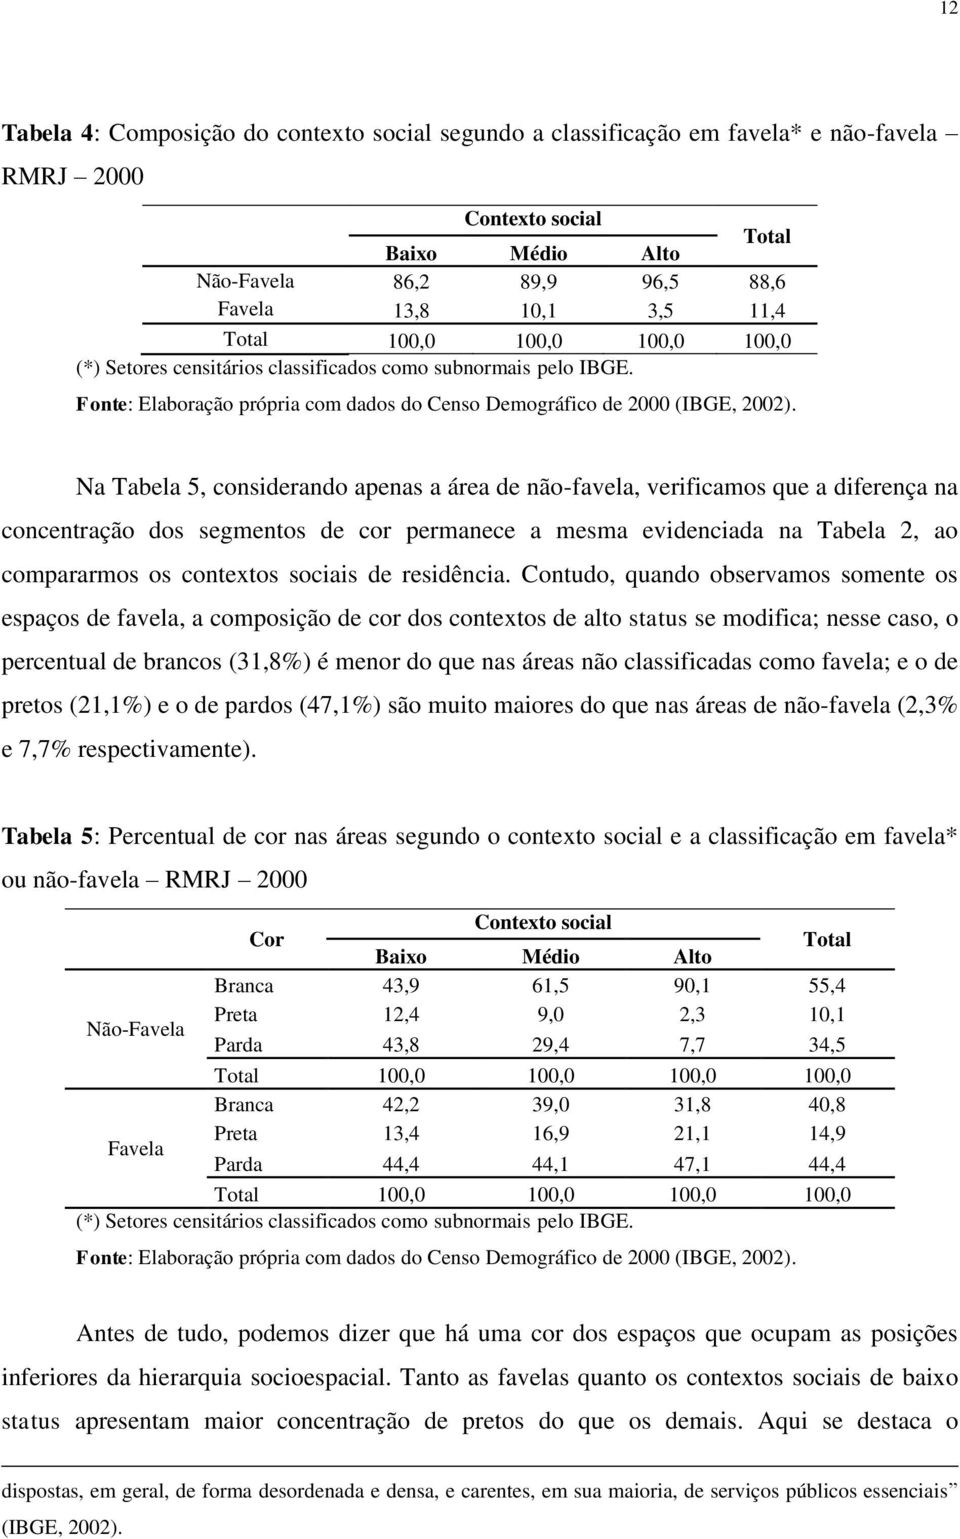 Na Tabela 5, considerando apenas a área de não-favela, verificamos que a diferença na concentração dos segmentos de cor permanece a mesma evidenciada na Tabela 2, ao compararmos os contextos sociais